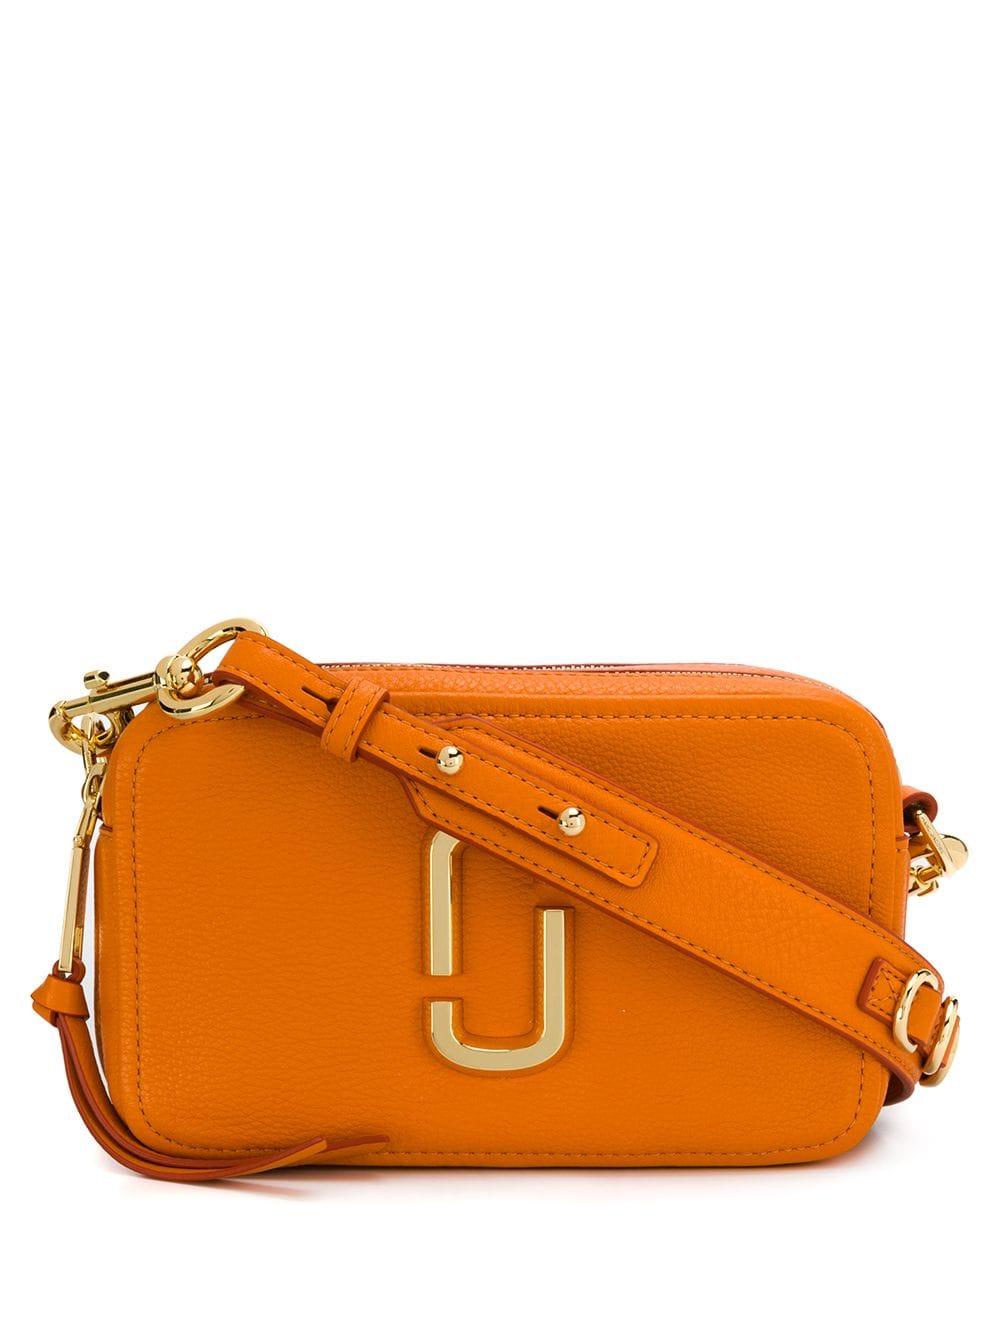 Marc Jacobs The Soft Shot 21 Leather Shoulder Bag in Orange - Lyst